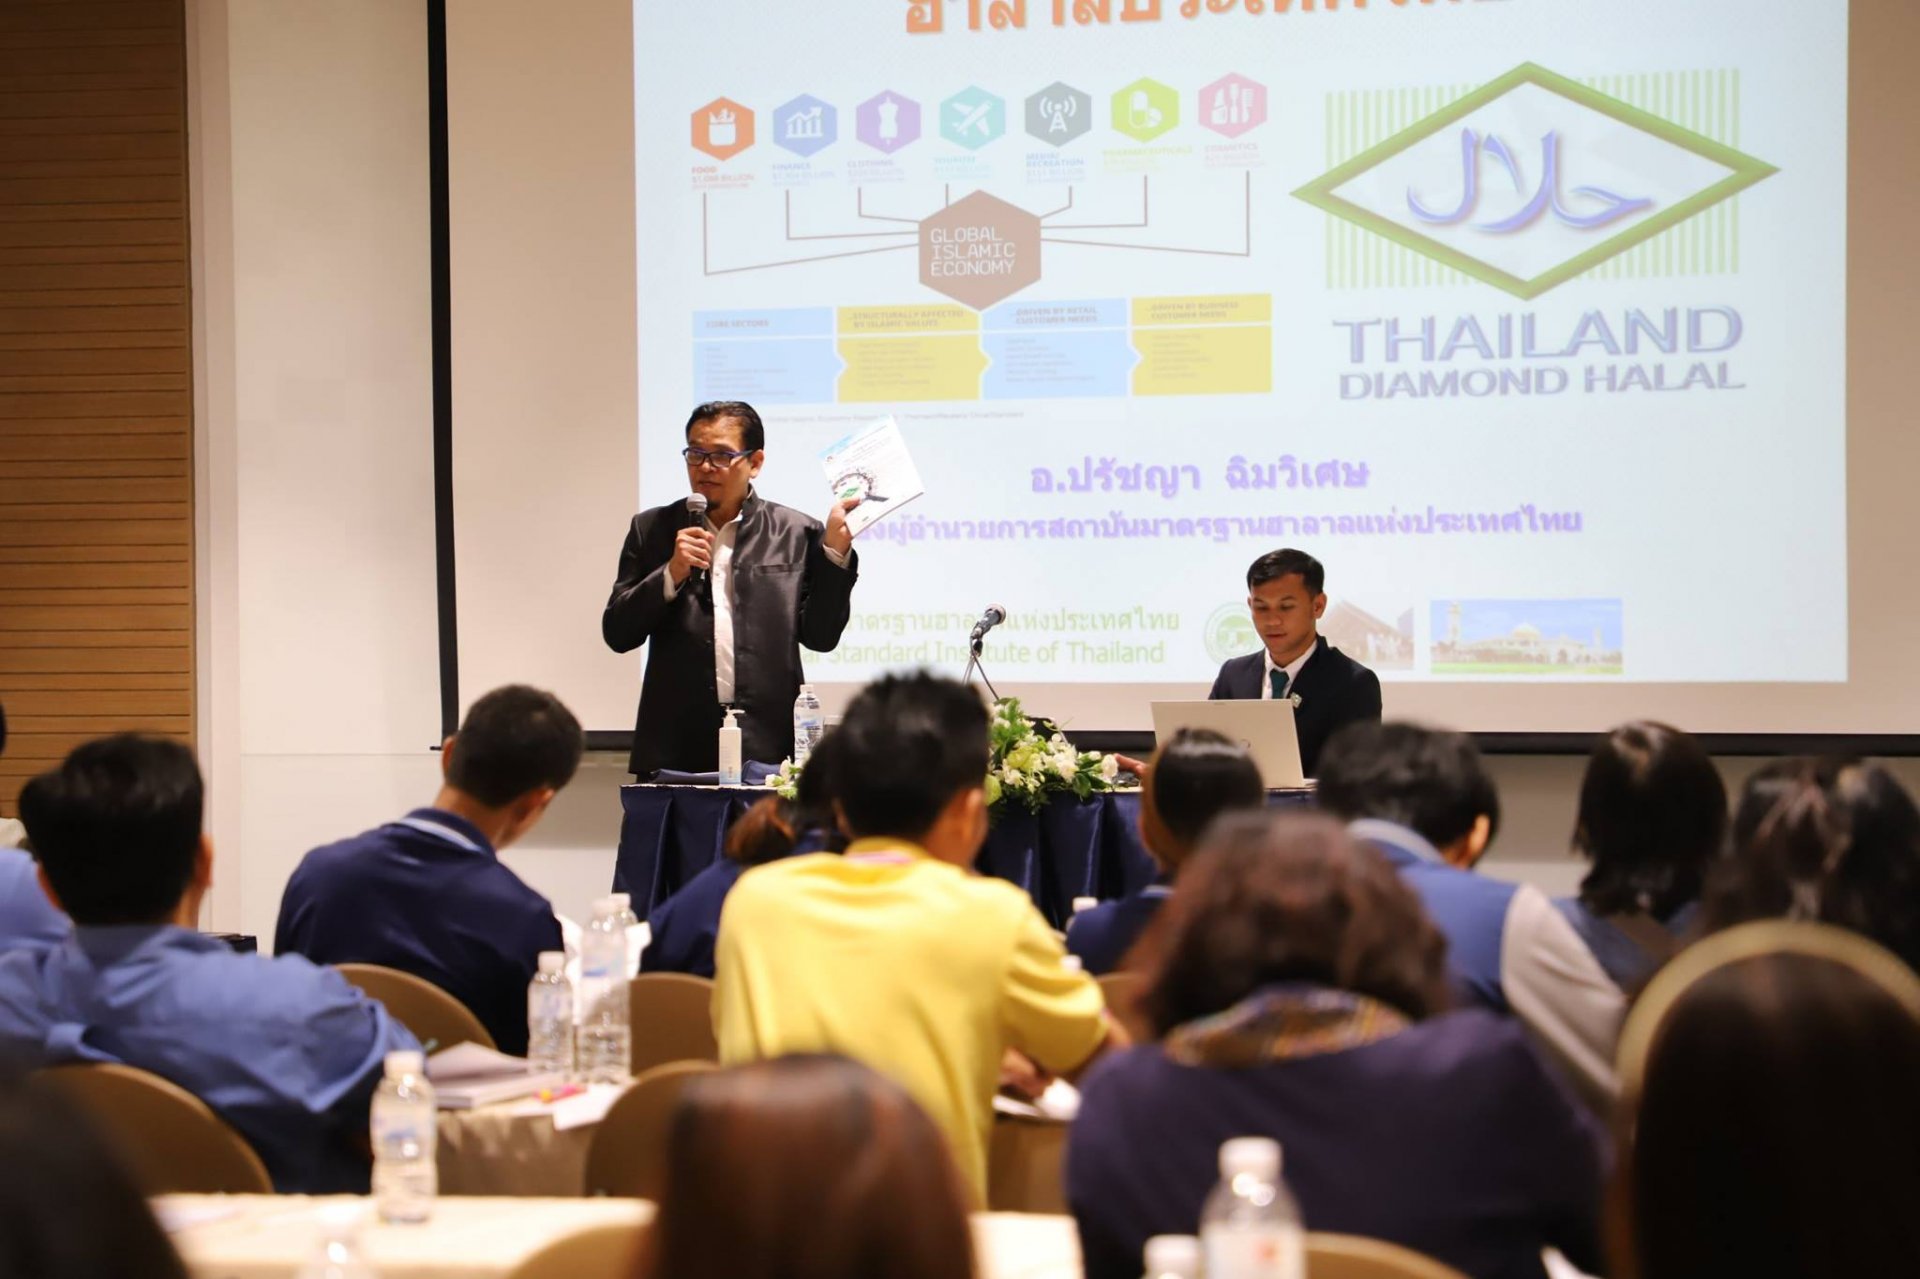 Halal Entrepreneurship Training Program Throughout the Kingdom of Thailand, Fiscal Year 2018 (Khonkeng Provinces)